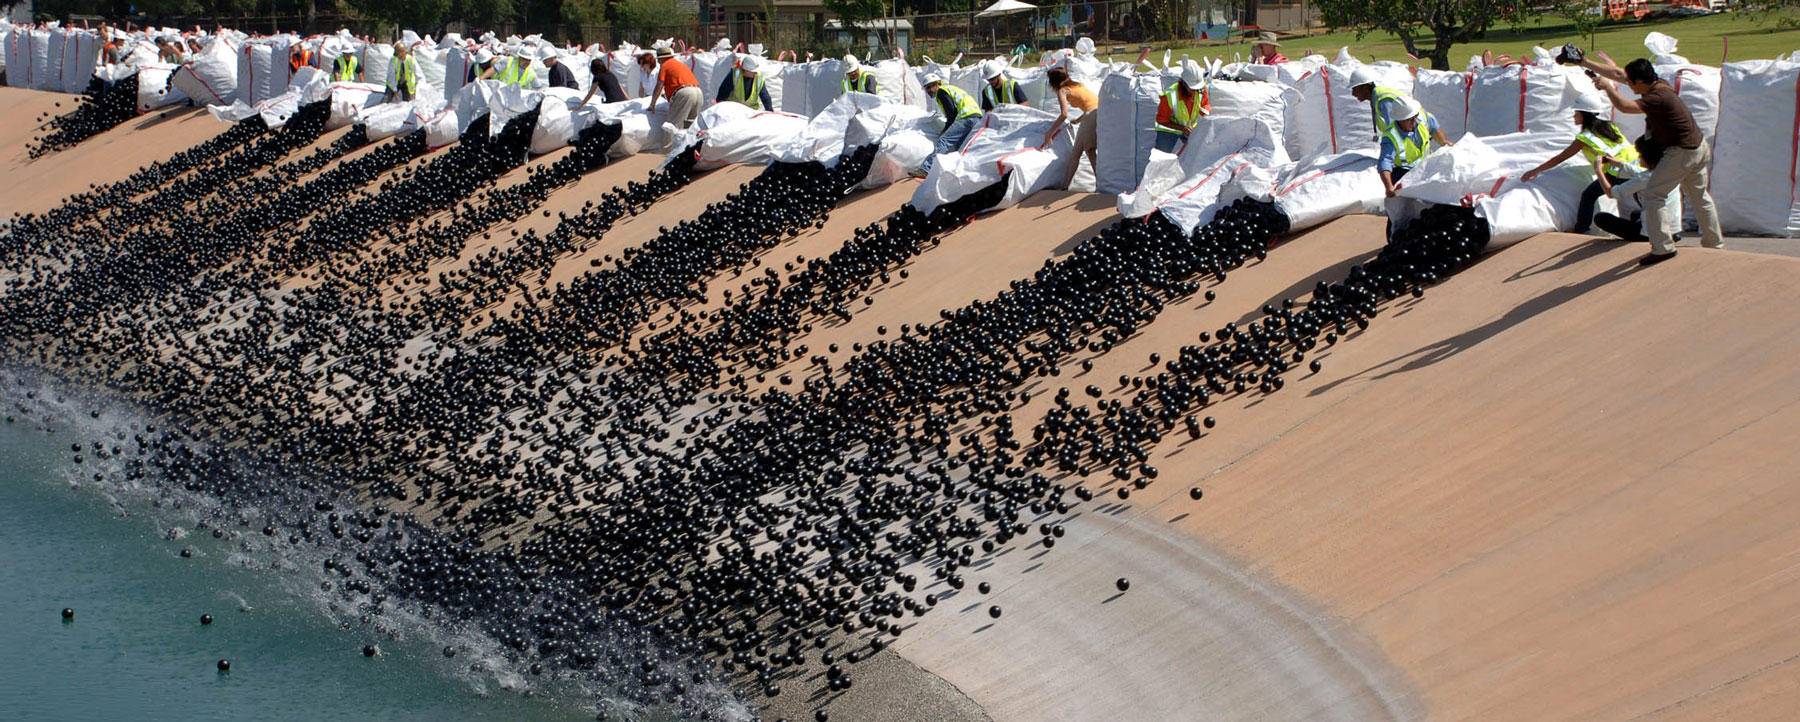 Что делают 96 миллионов теневых шариков в водохранилище лос-анджелеса? - наука - 2021